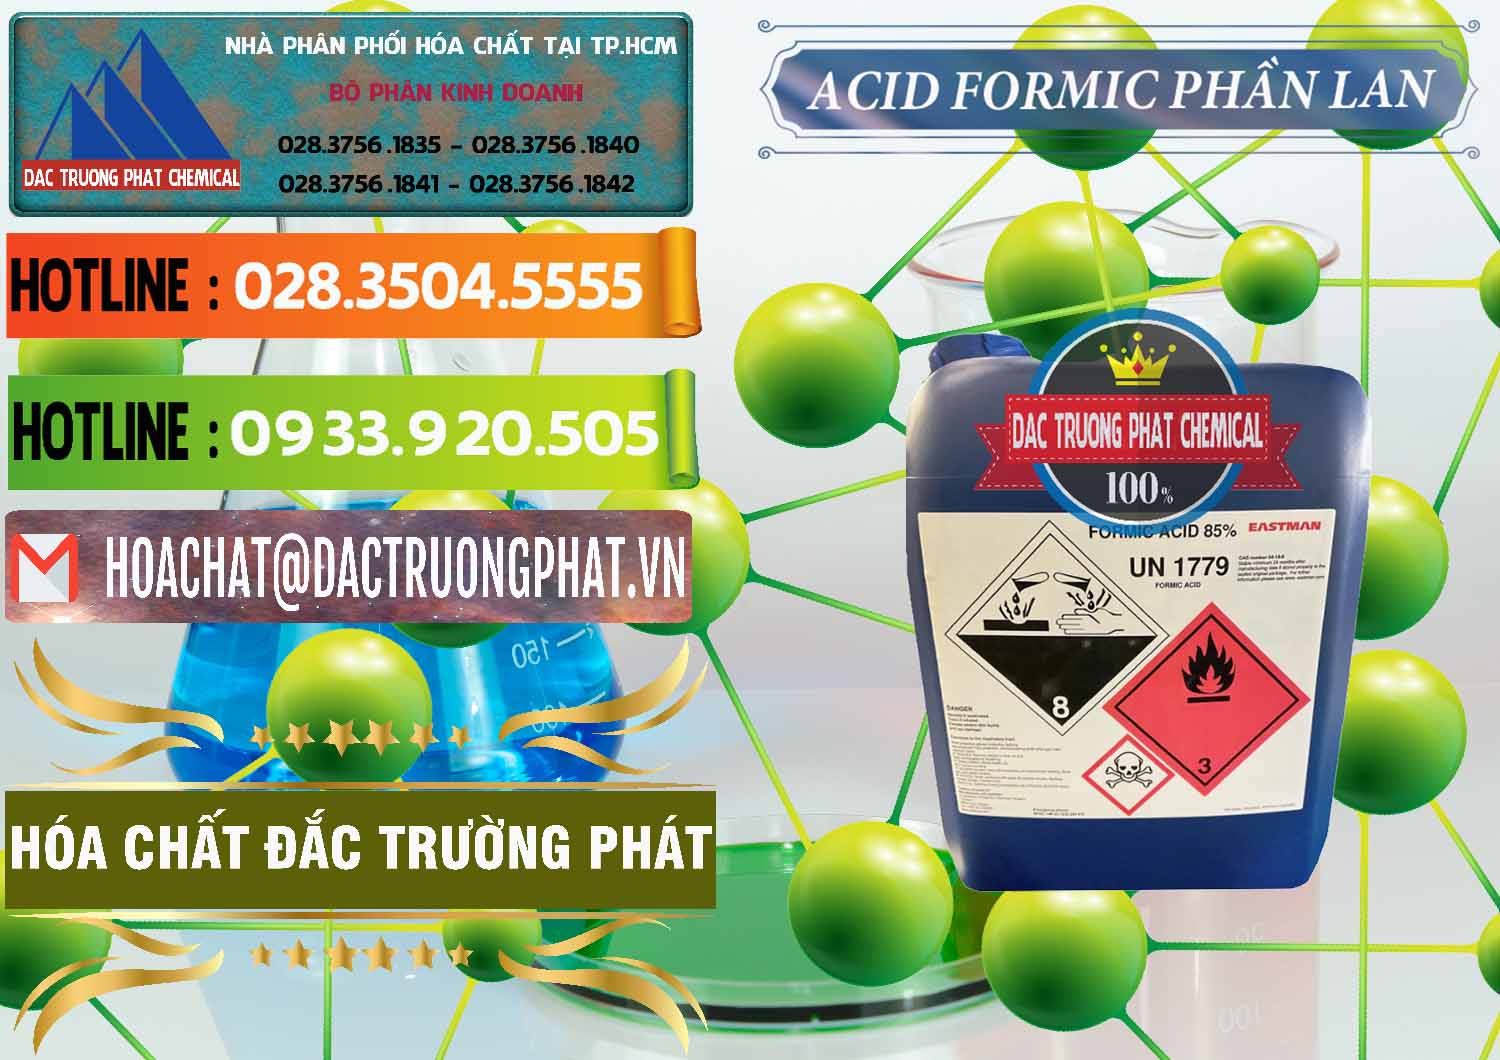 Cty cung cấp _ bán Acid Formic - Axit Formic Phần Lan Finland - 0376 - Cung cấp _ phân phối hóa chất tại TP.HCM - cungcaphoachat.com.vn